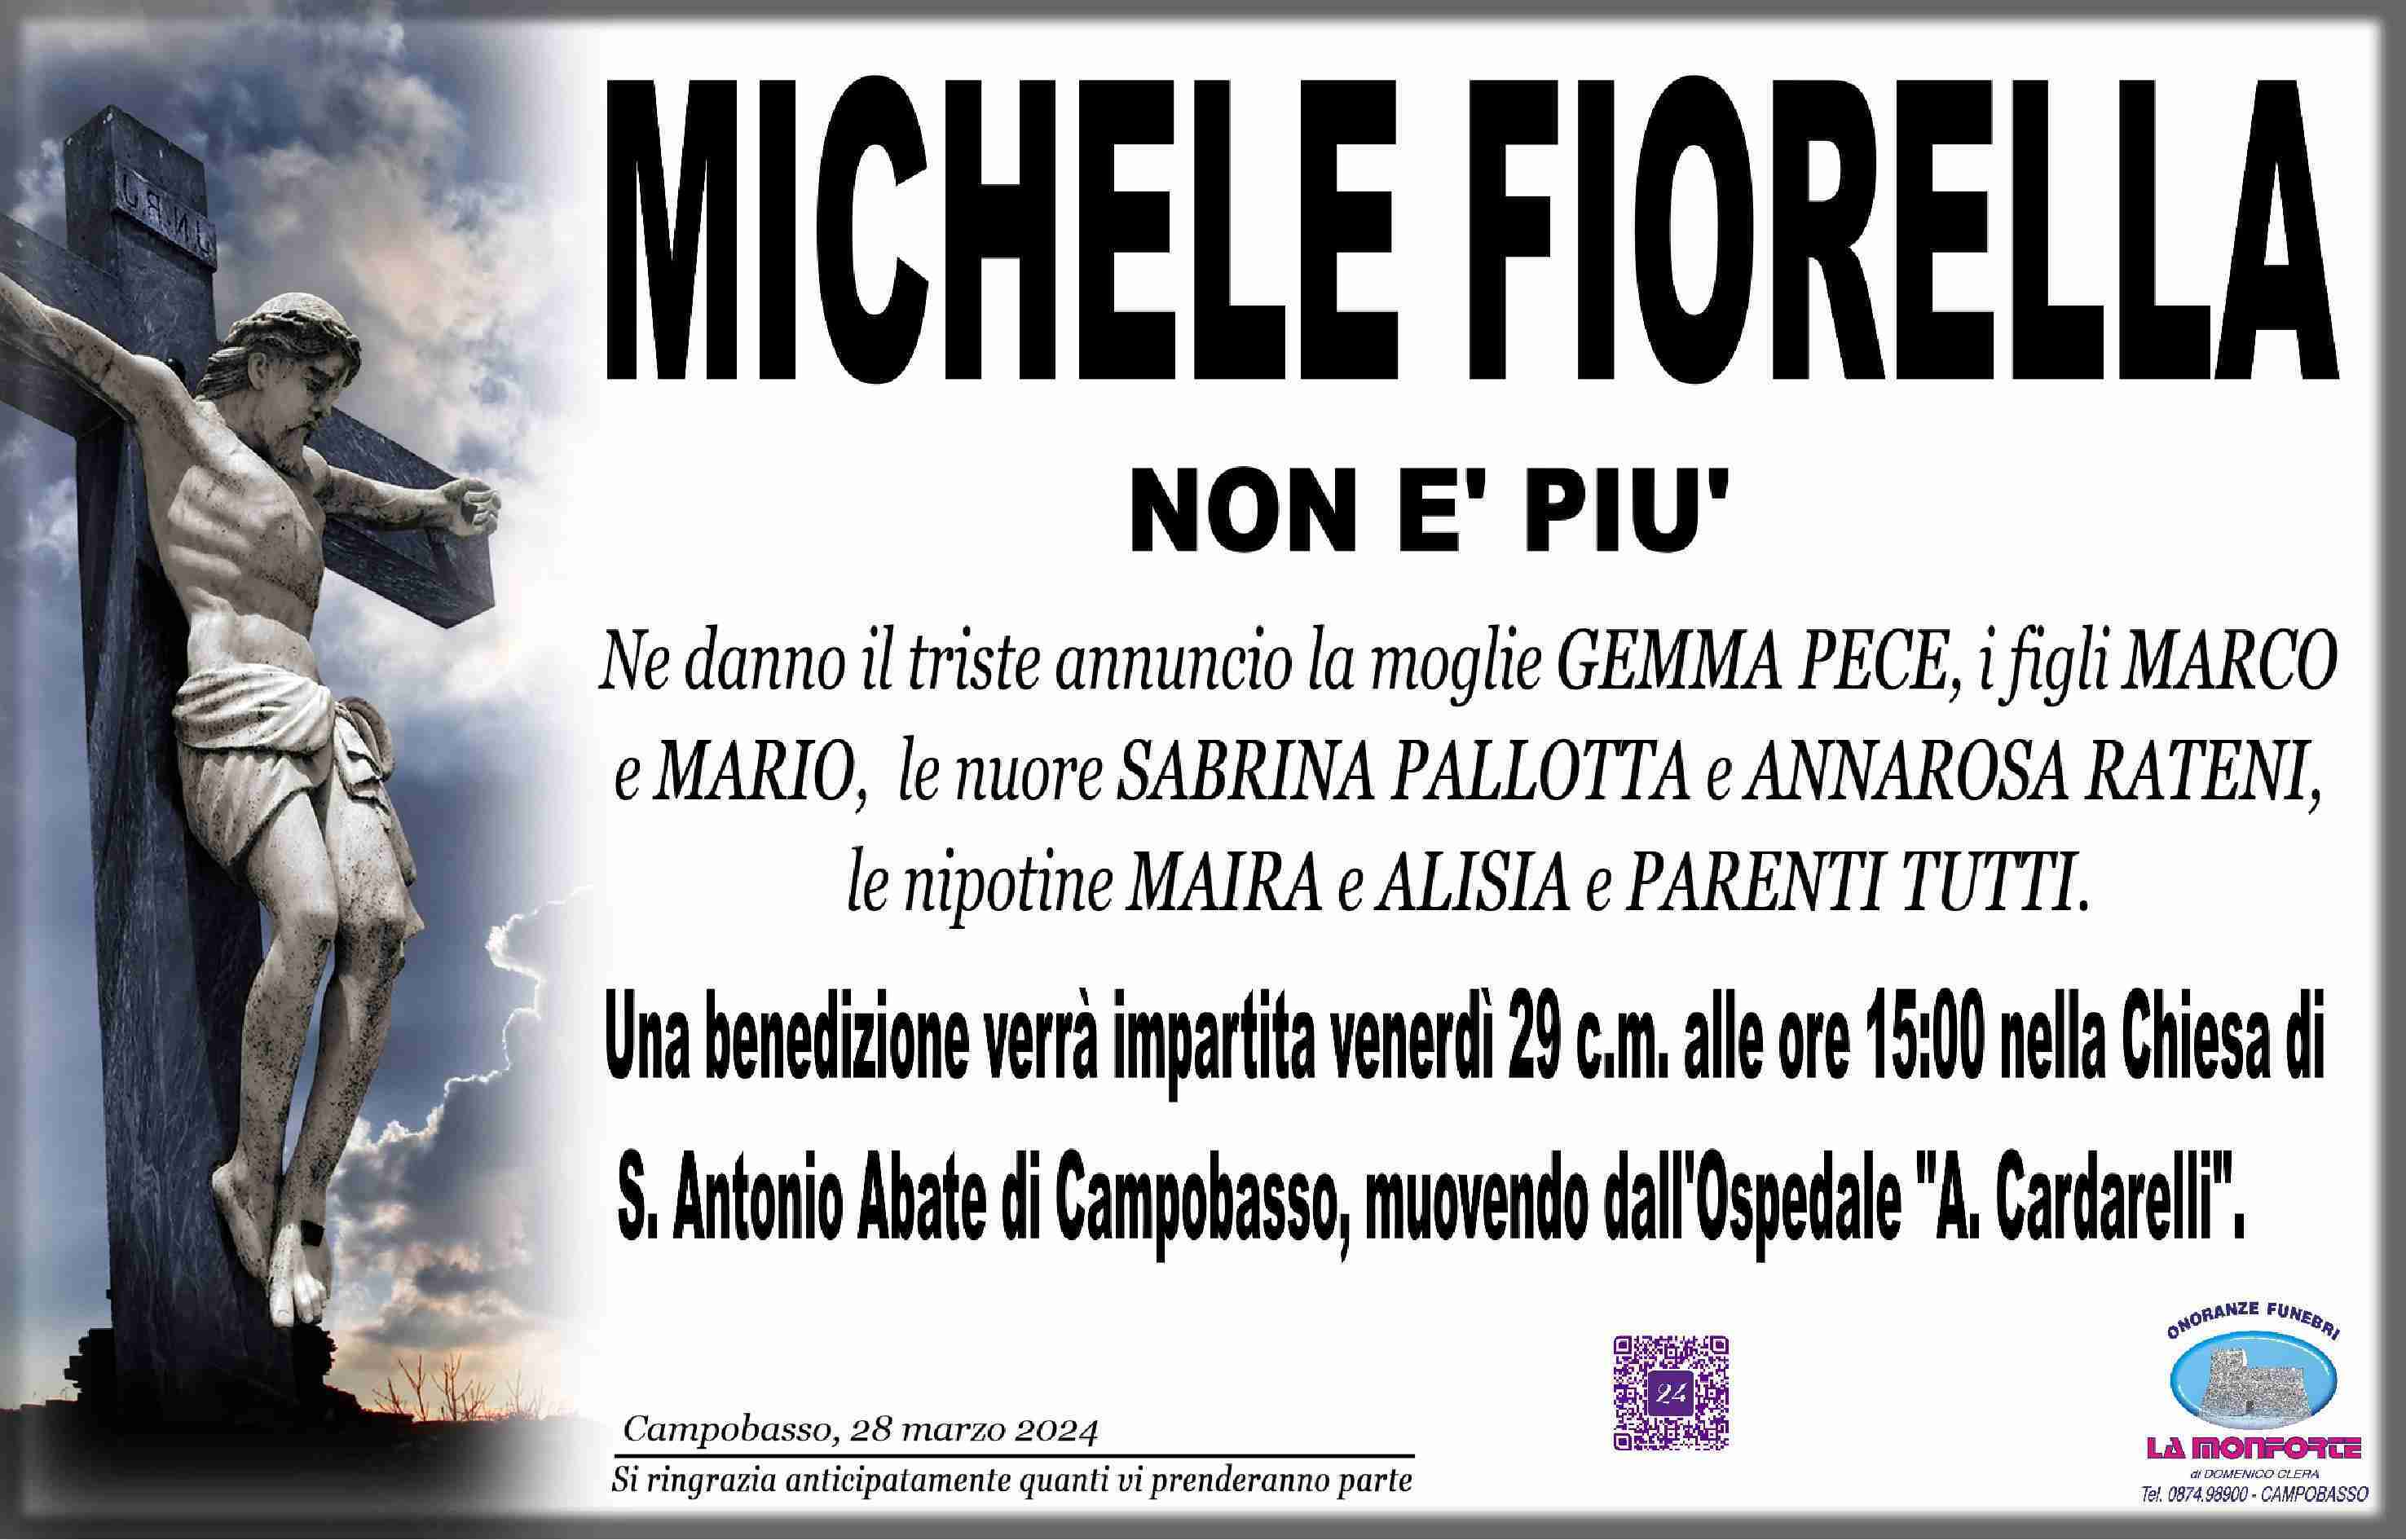 Michele Fiorella